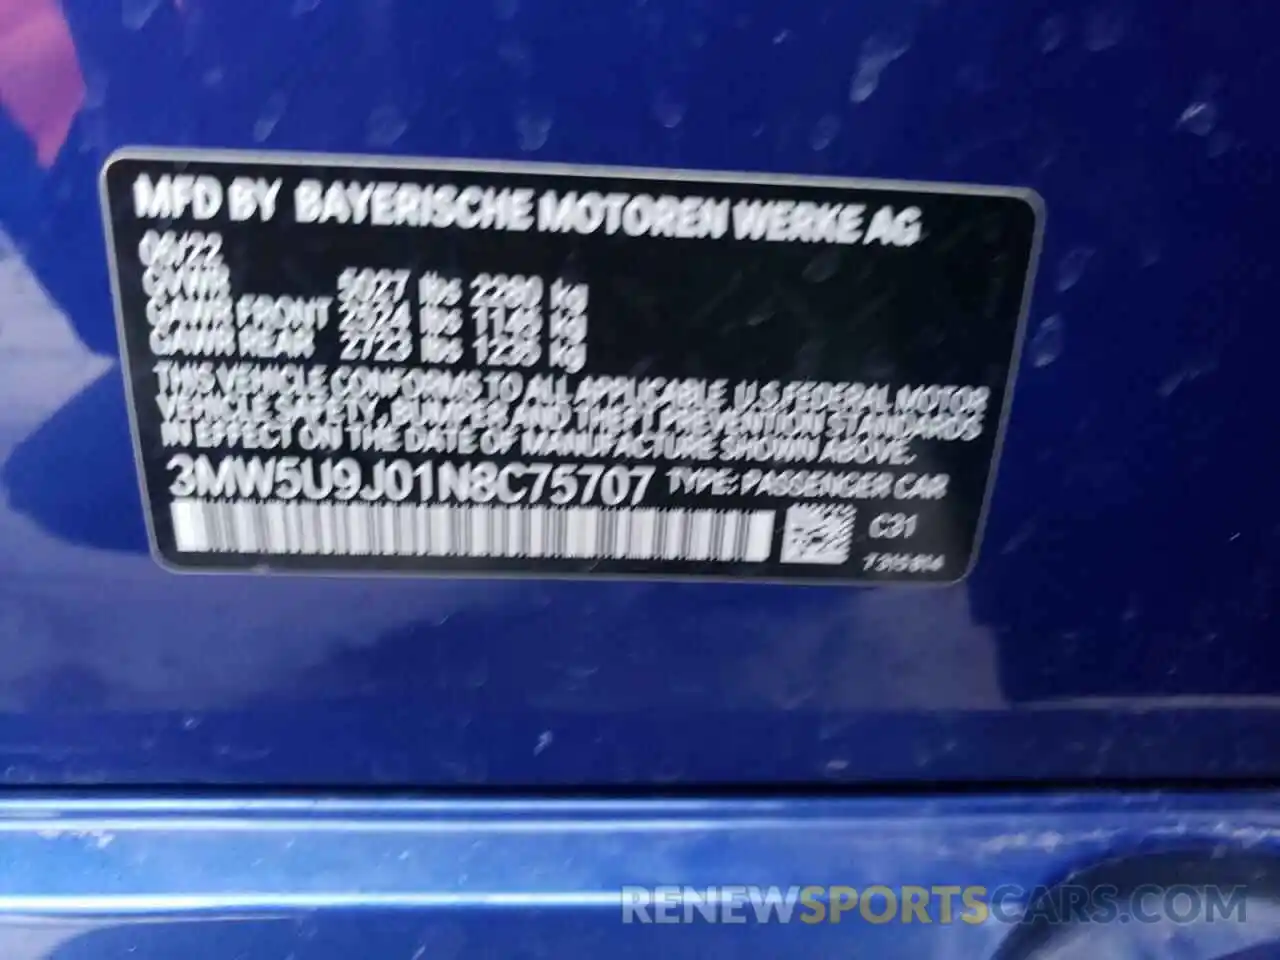 13 Photograph of a damaged car 3MW5U9J01N8C75707 BMW M3 2022